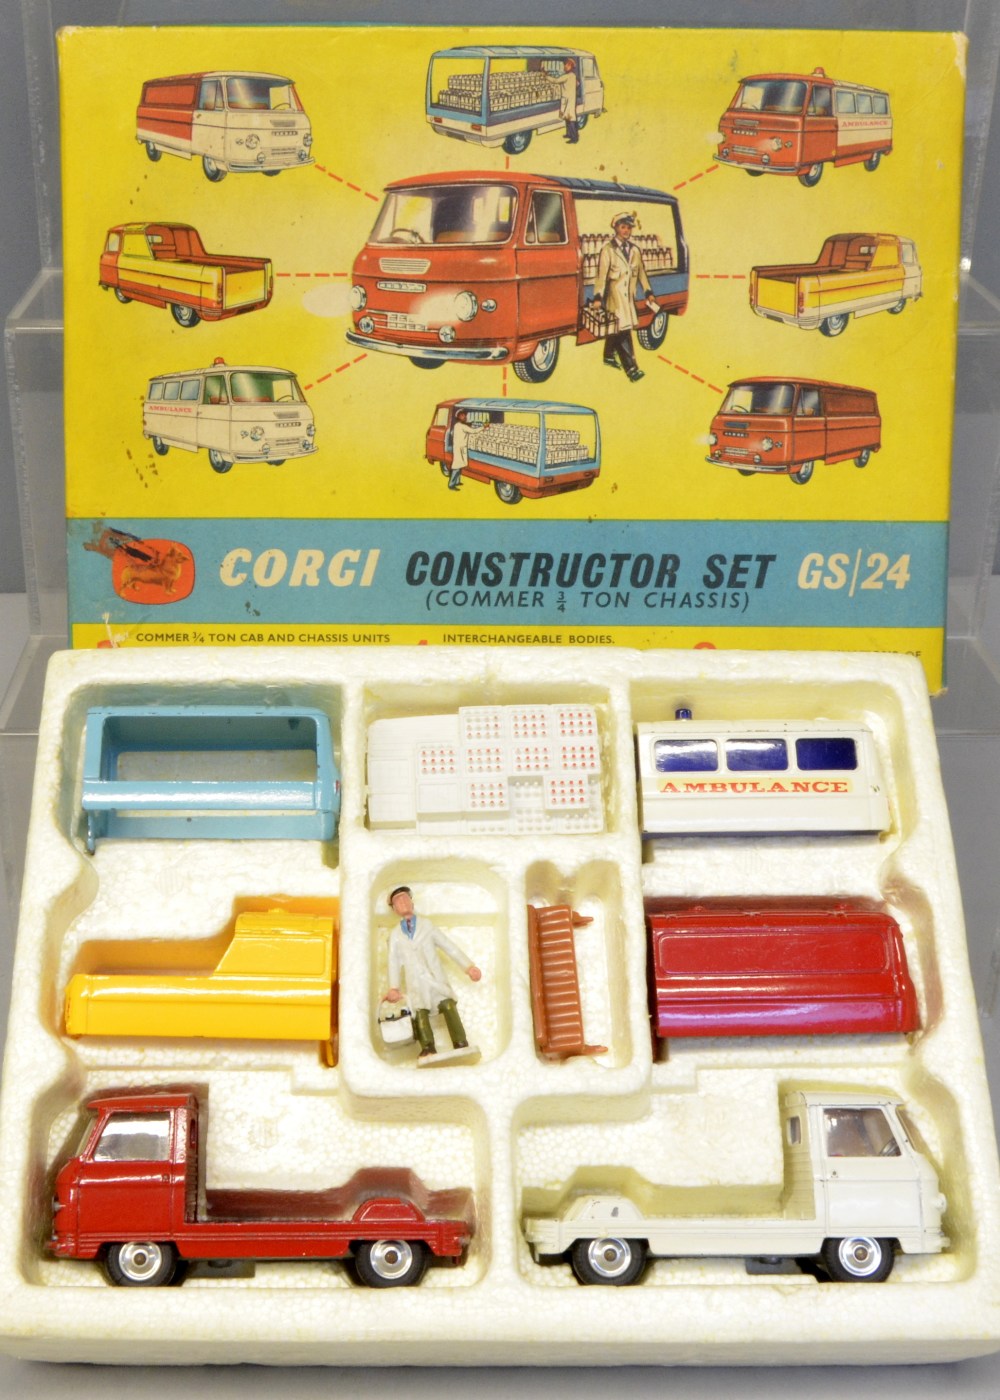 Corgi Constructors set GS 24